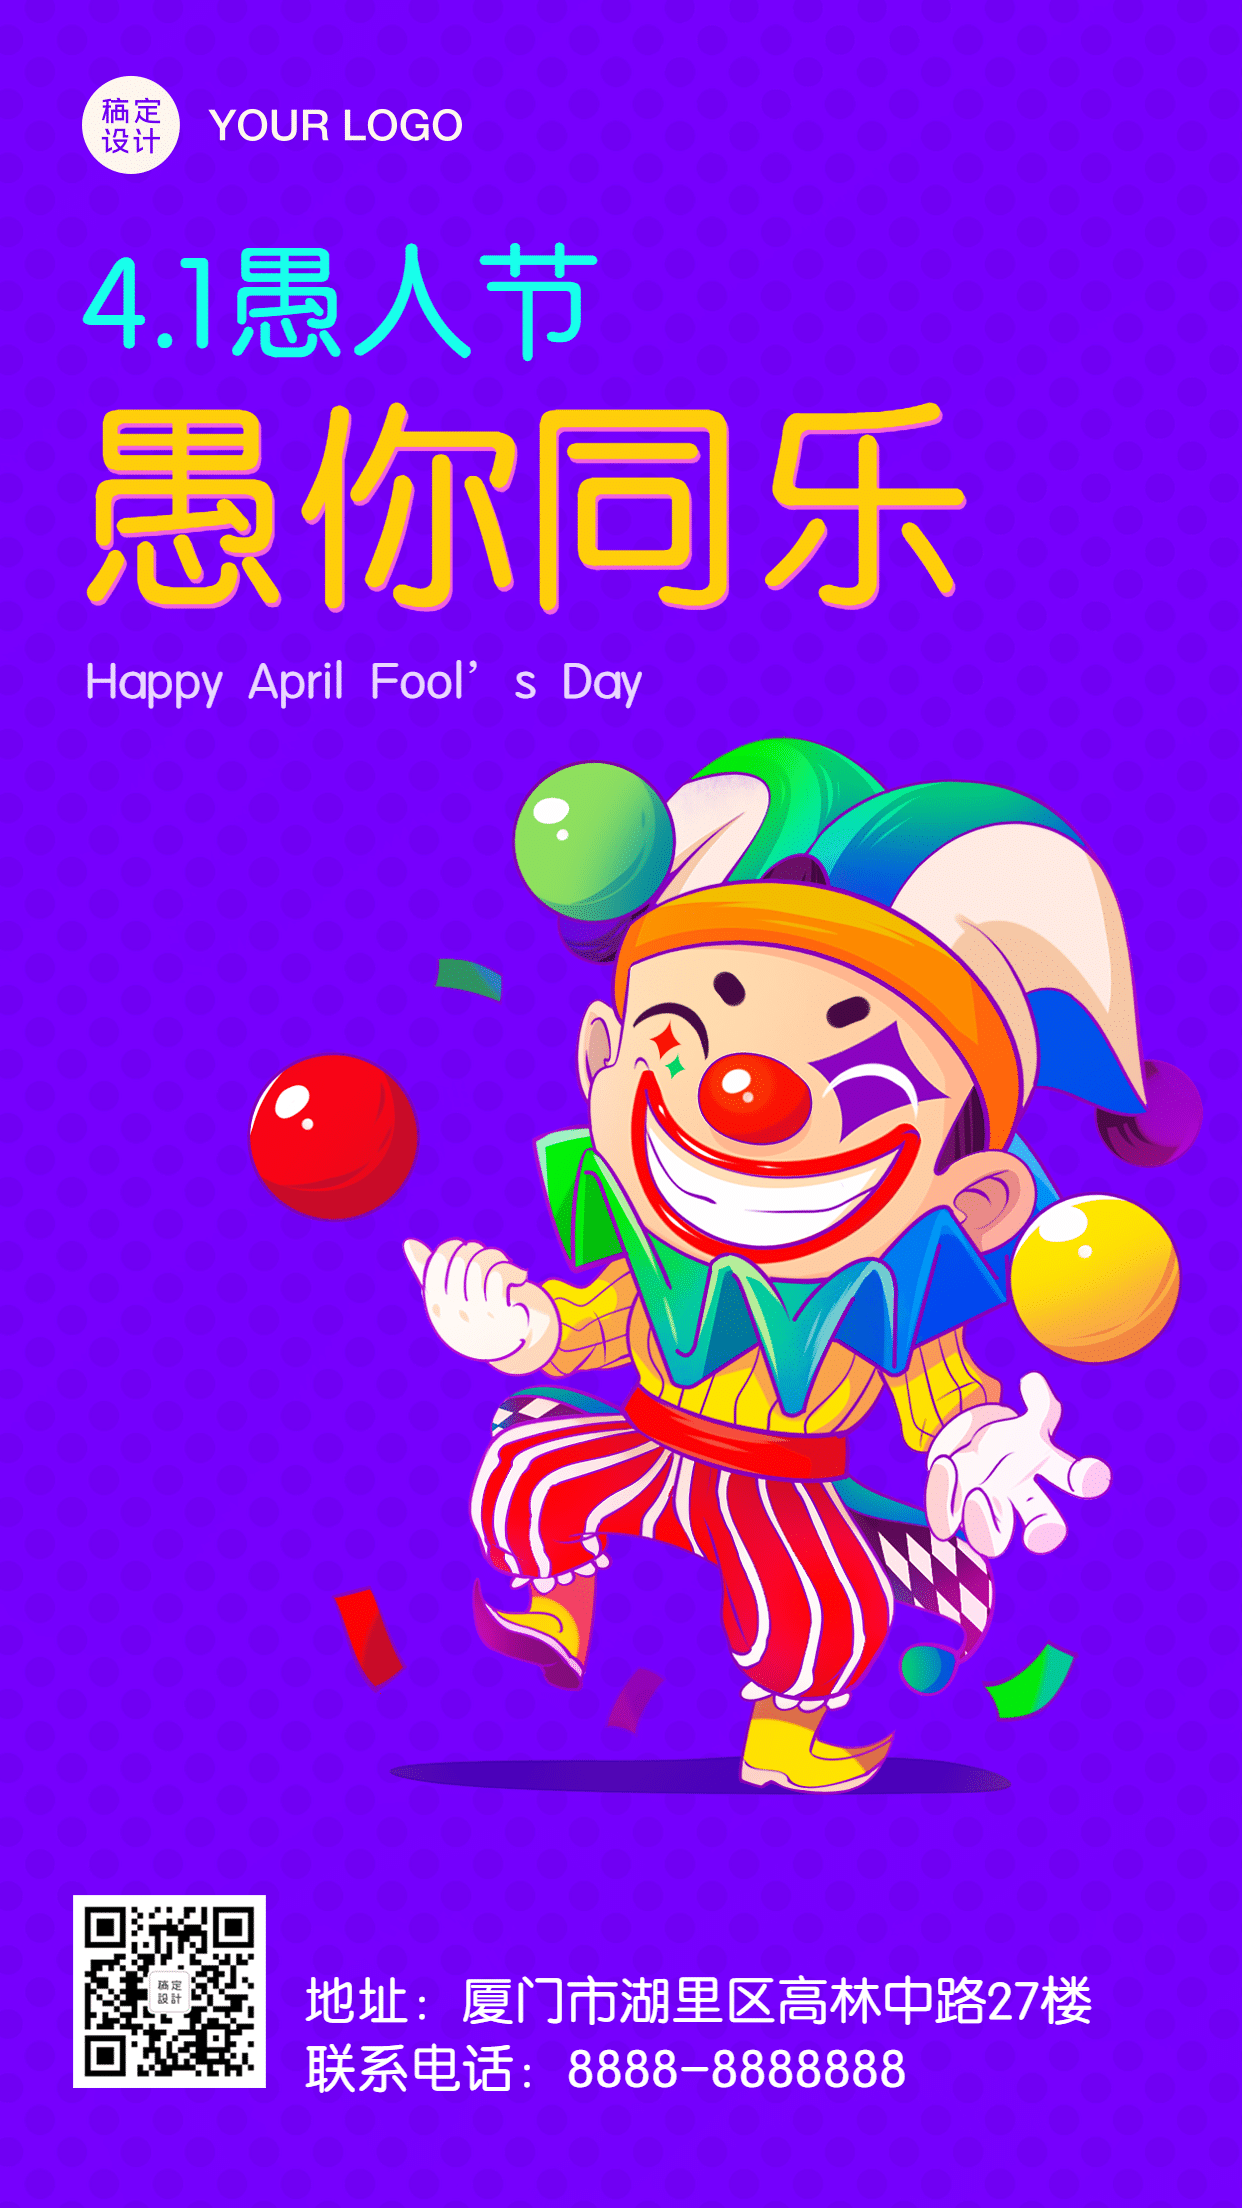 愚人节祝福小丑可爱插画手机海报预览效果